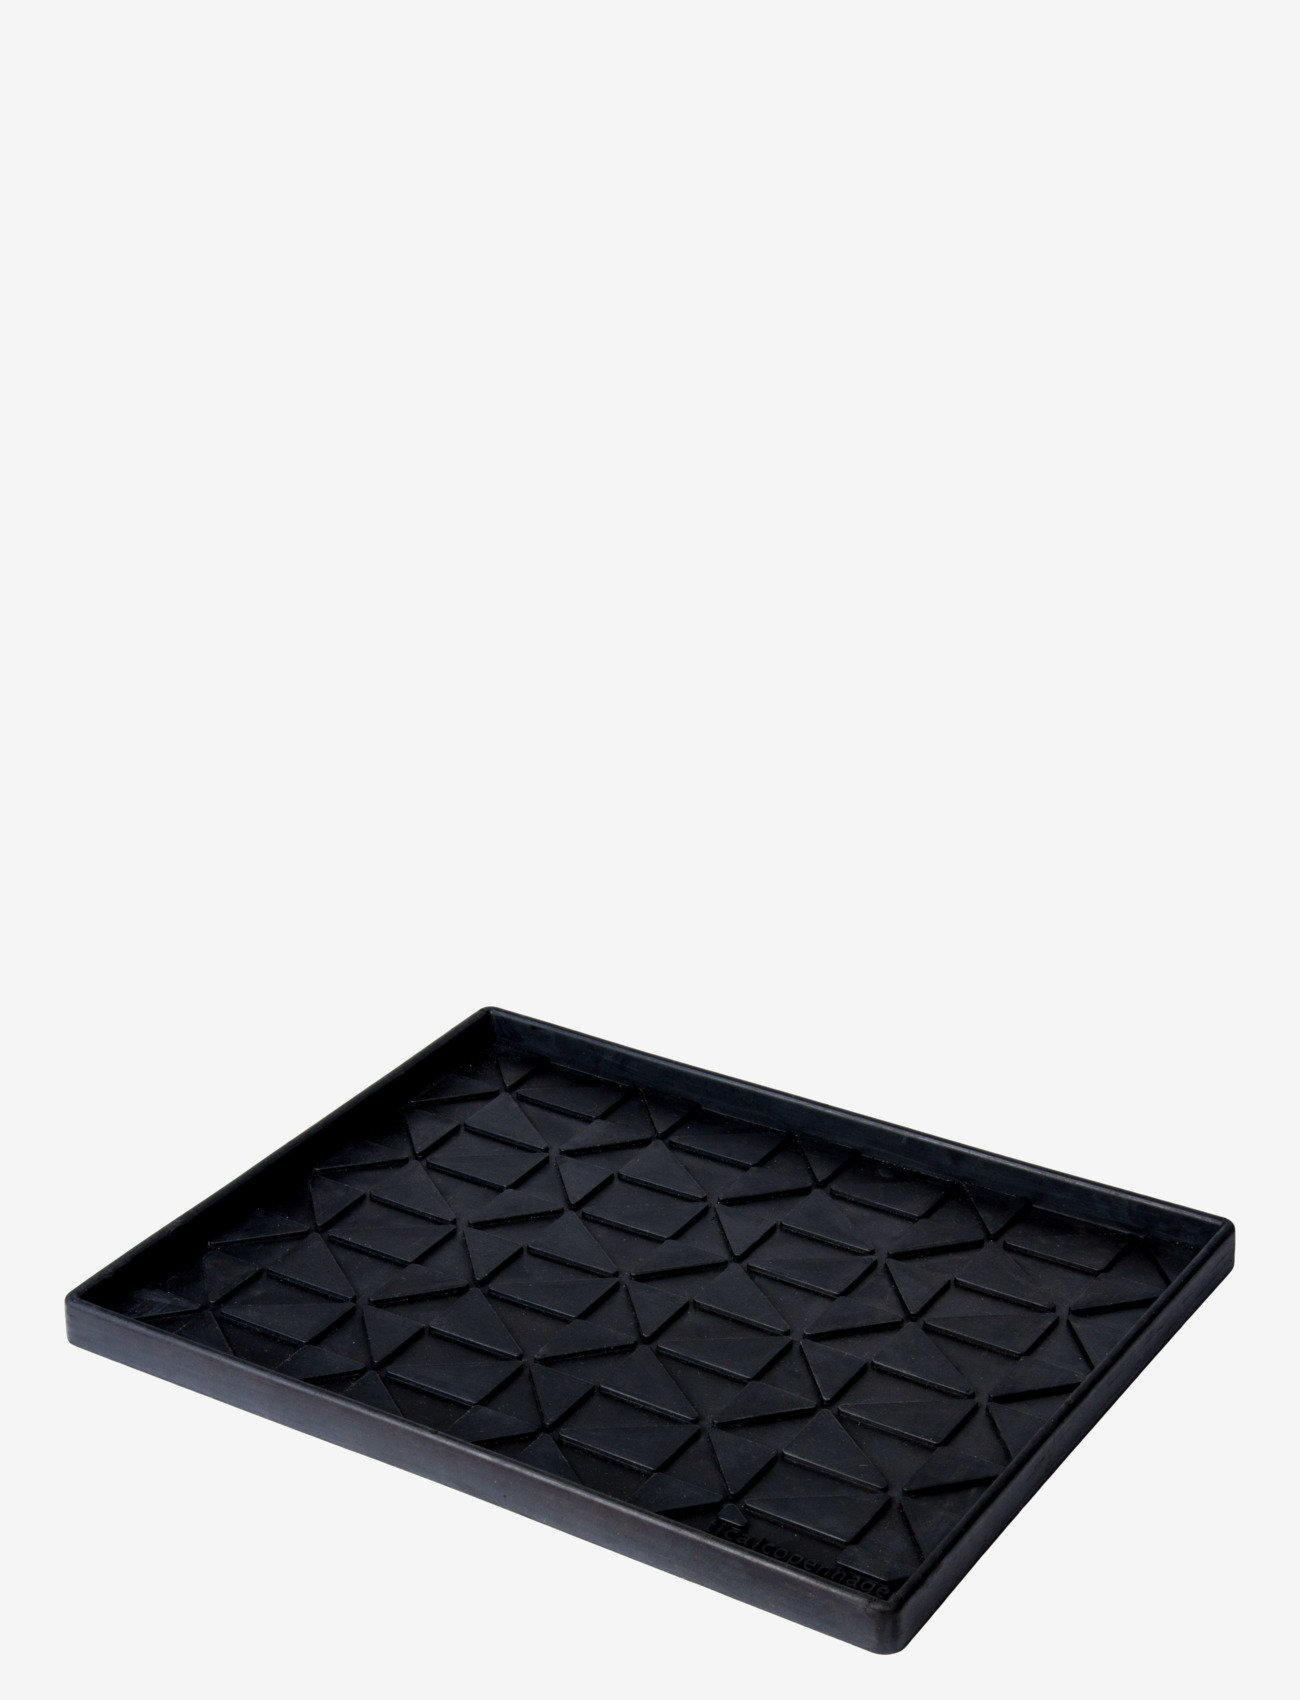 tica copenhagen - Shoe and boot tray rubber, M:48x38x3 cm - laagste prijzen - graphic design - 1